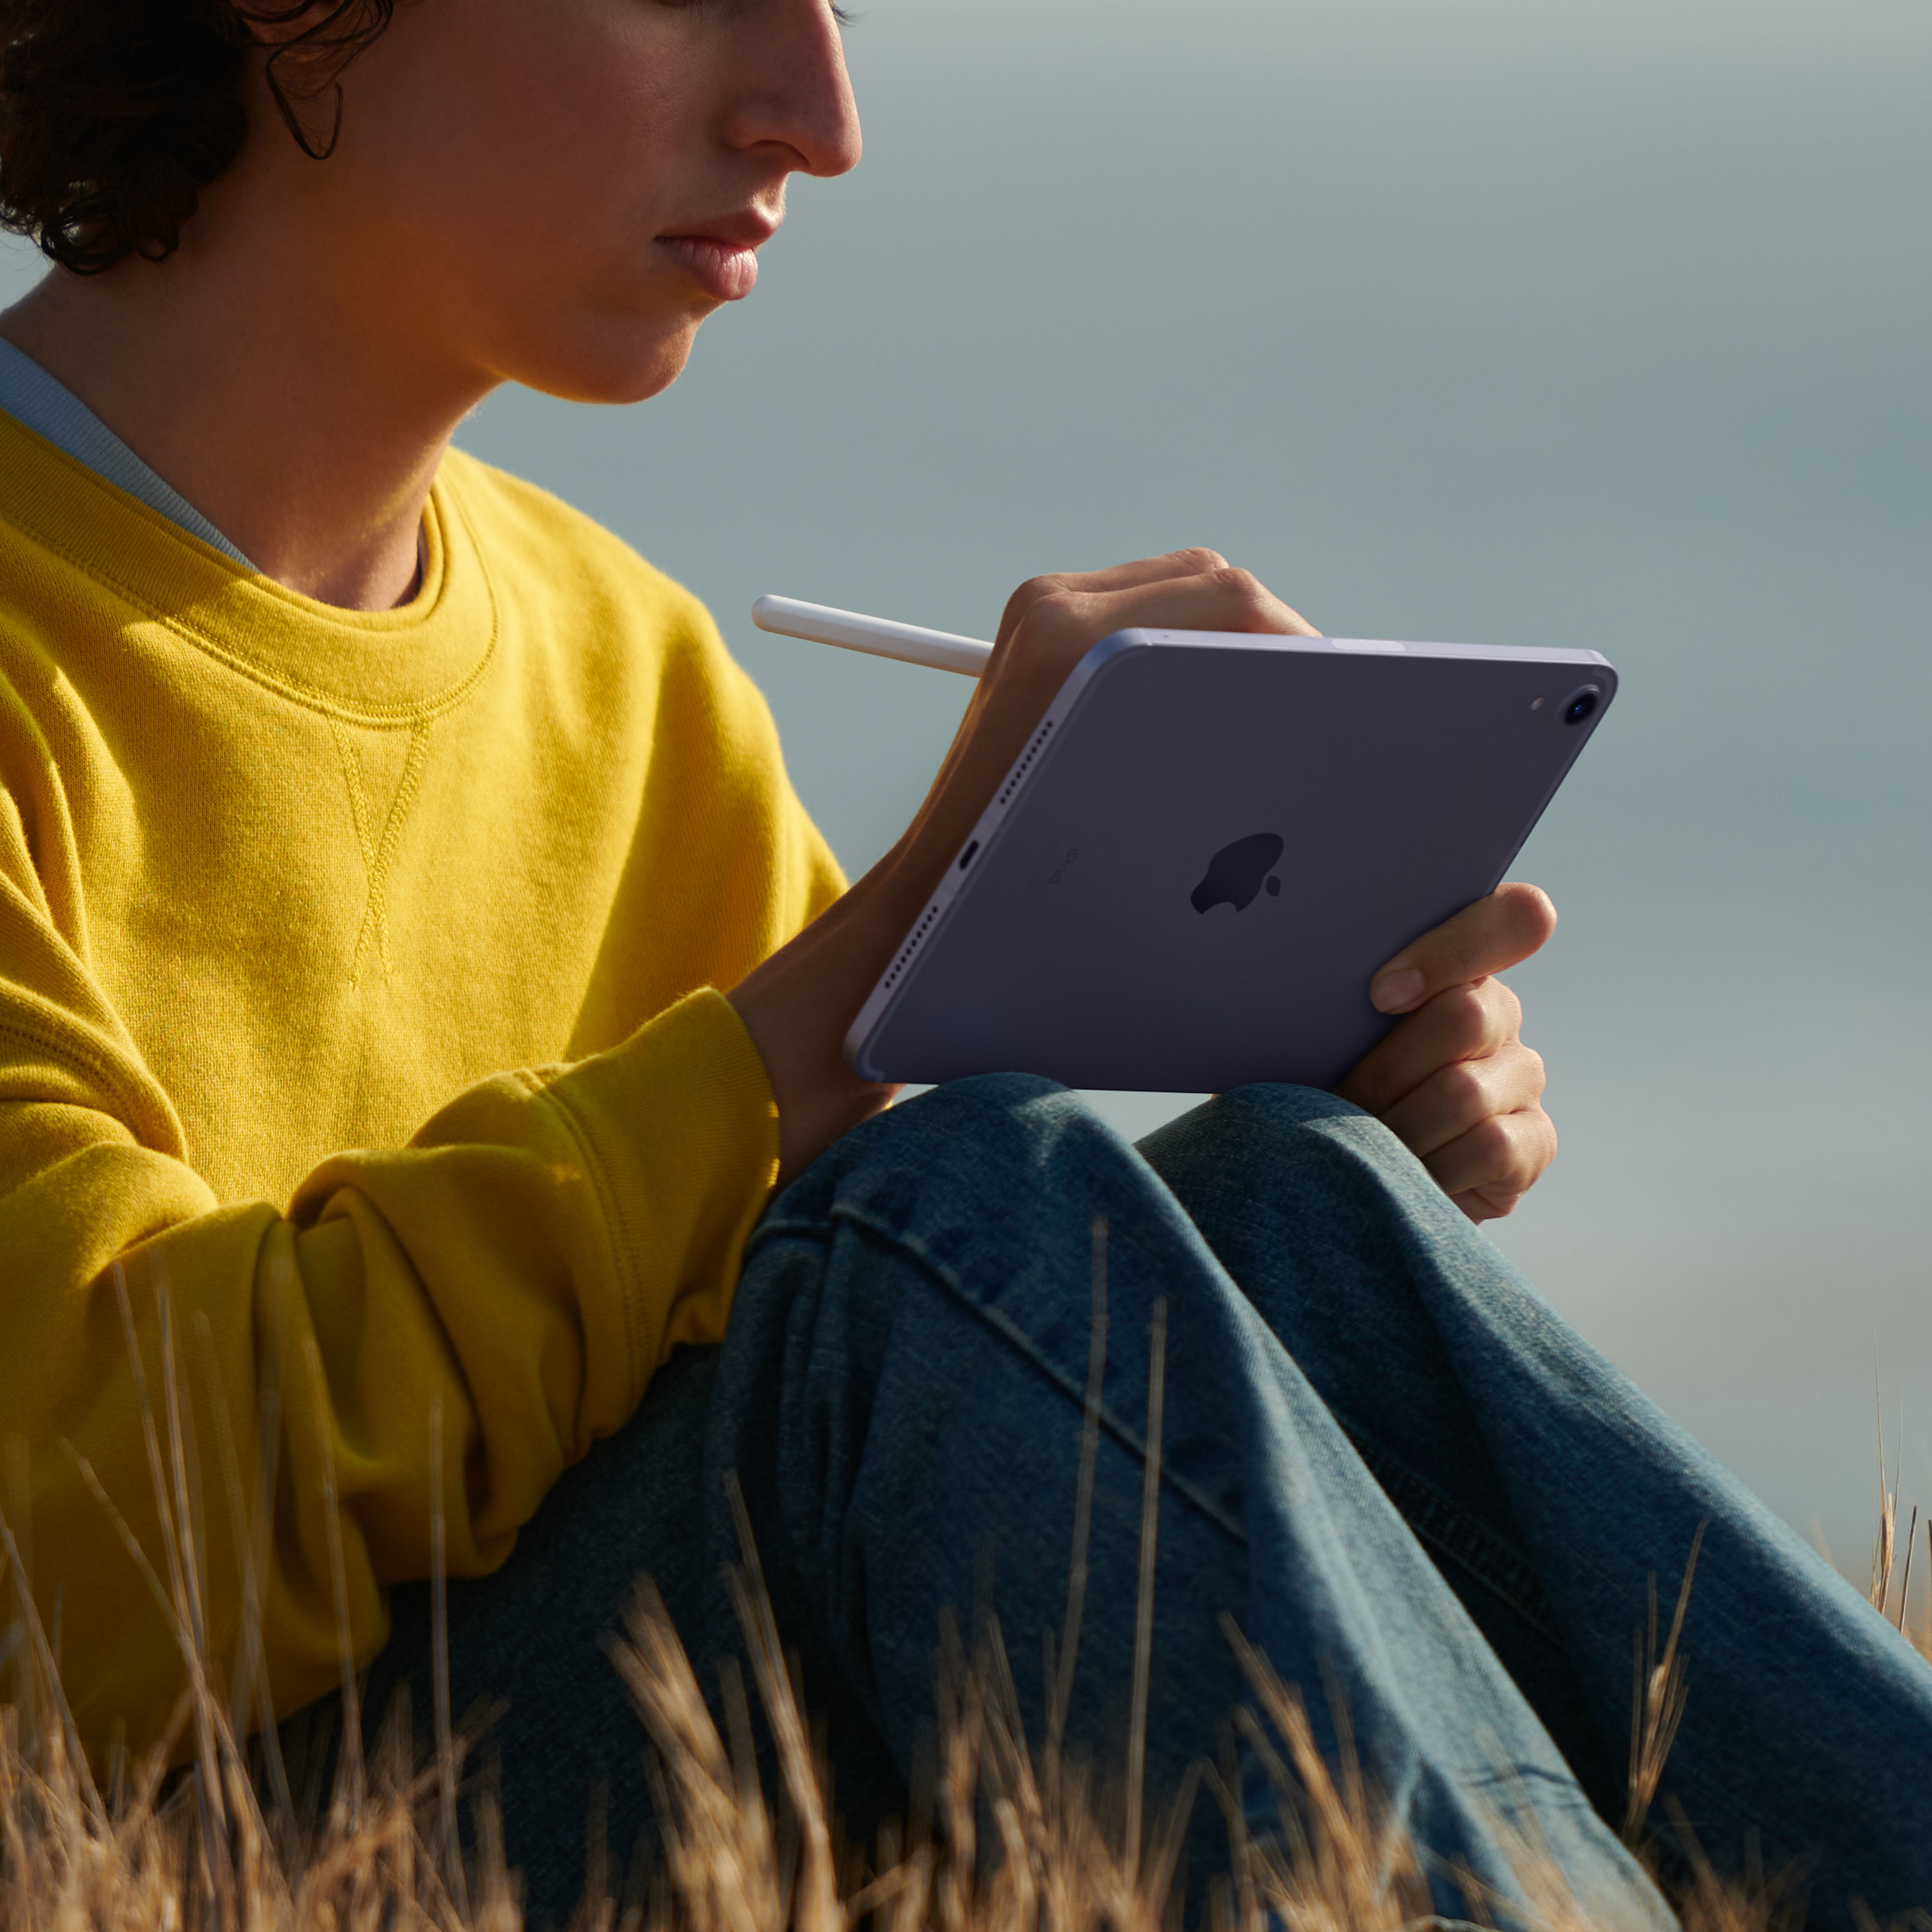 Tablet Apple iPad mini 5G TD-LTE & FDD-LTE 64 GB 21,1 cm [8.3] Wi-Fi 6 [802.11ax] iPadOS 15 Rose Gold (IPAD MINI WI-FI + CELL 64GB - 8.3IN A15 CHIP PINK) [MLX43FD/A]